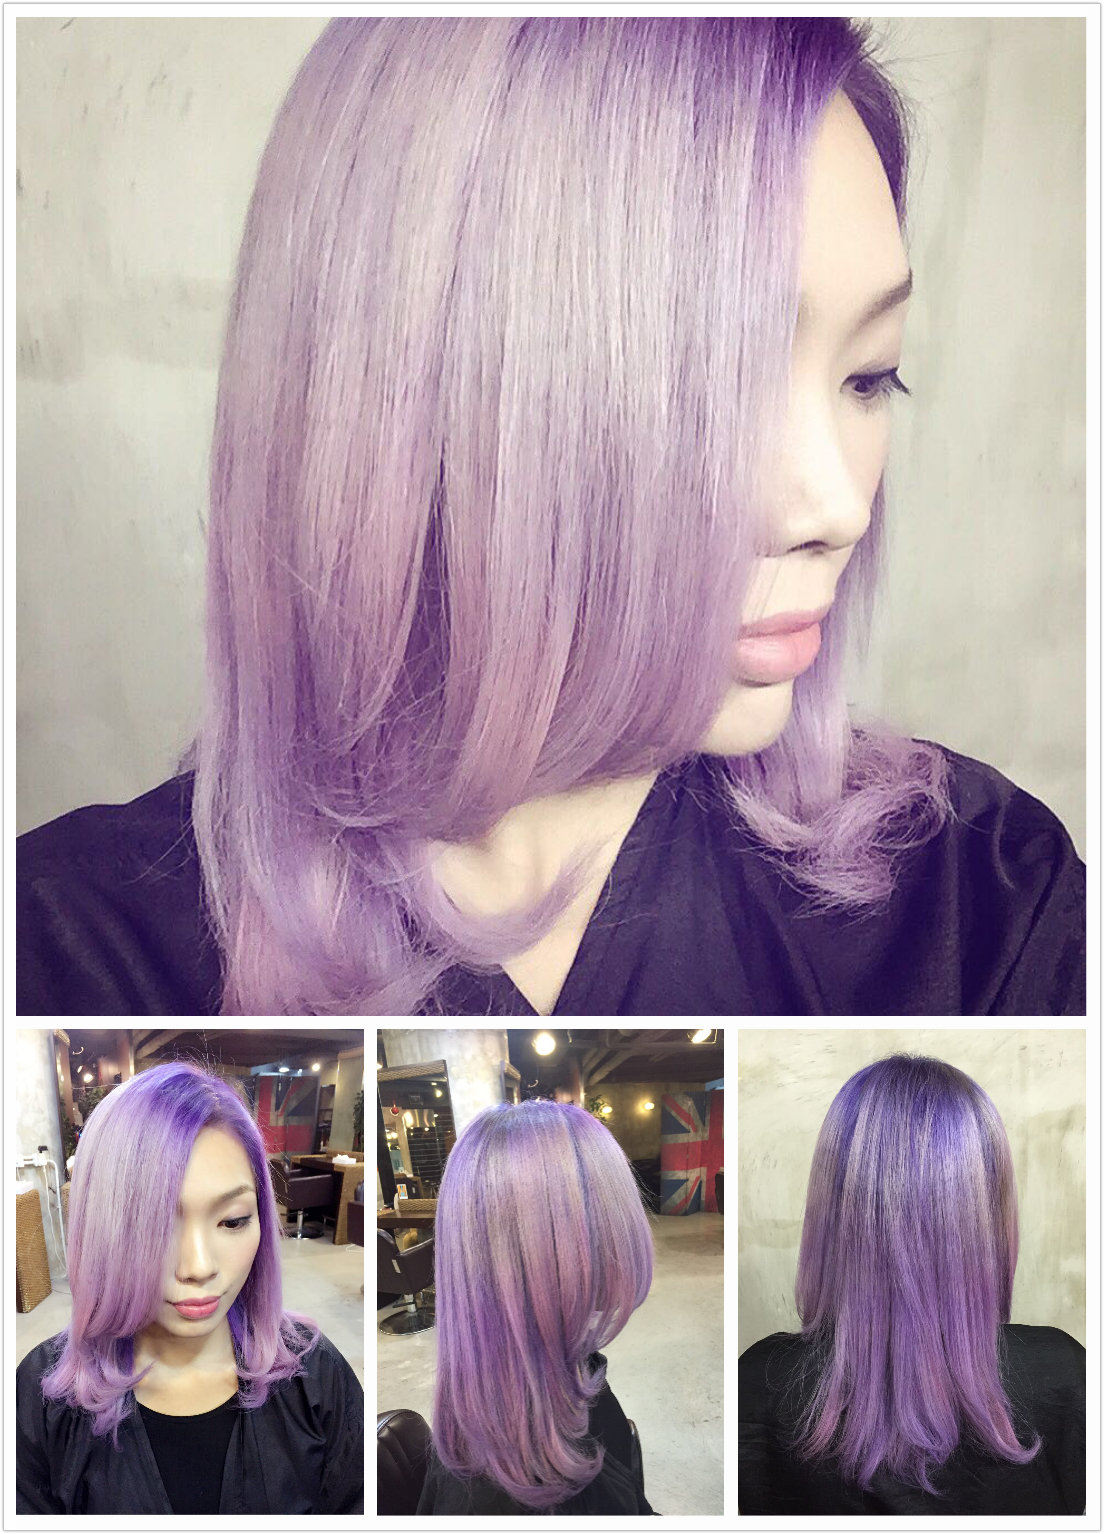 髮型作品参考:灰紫